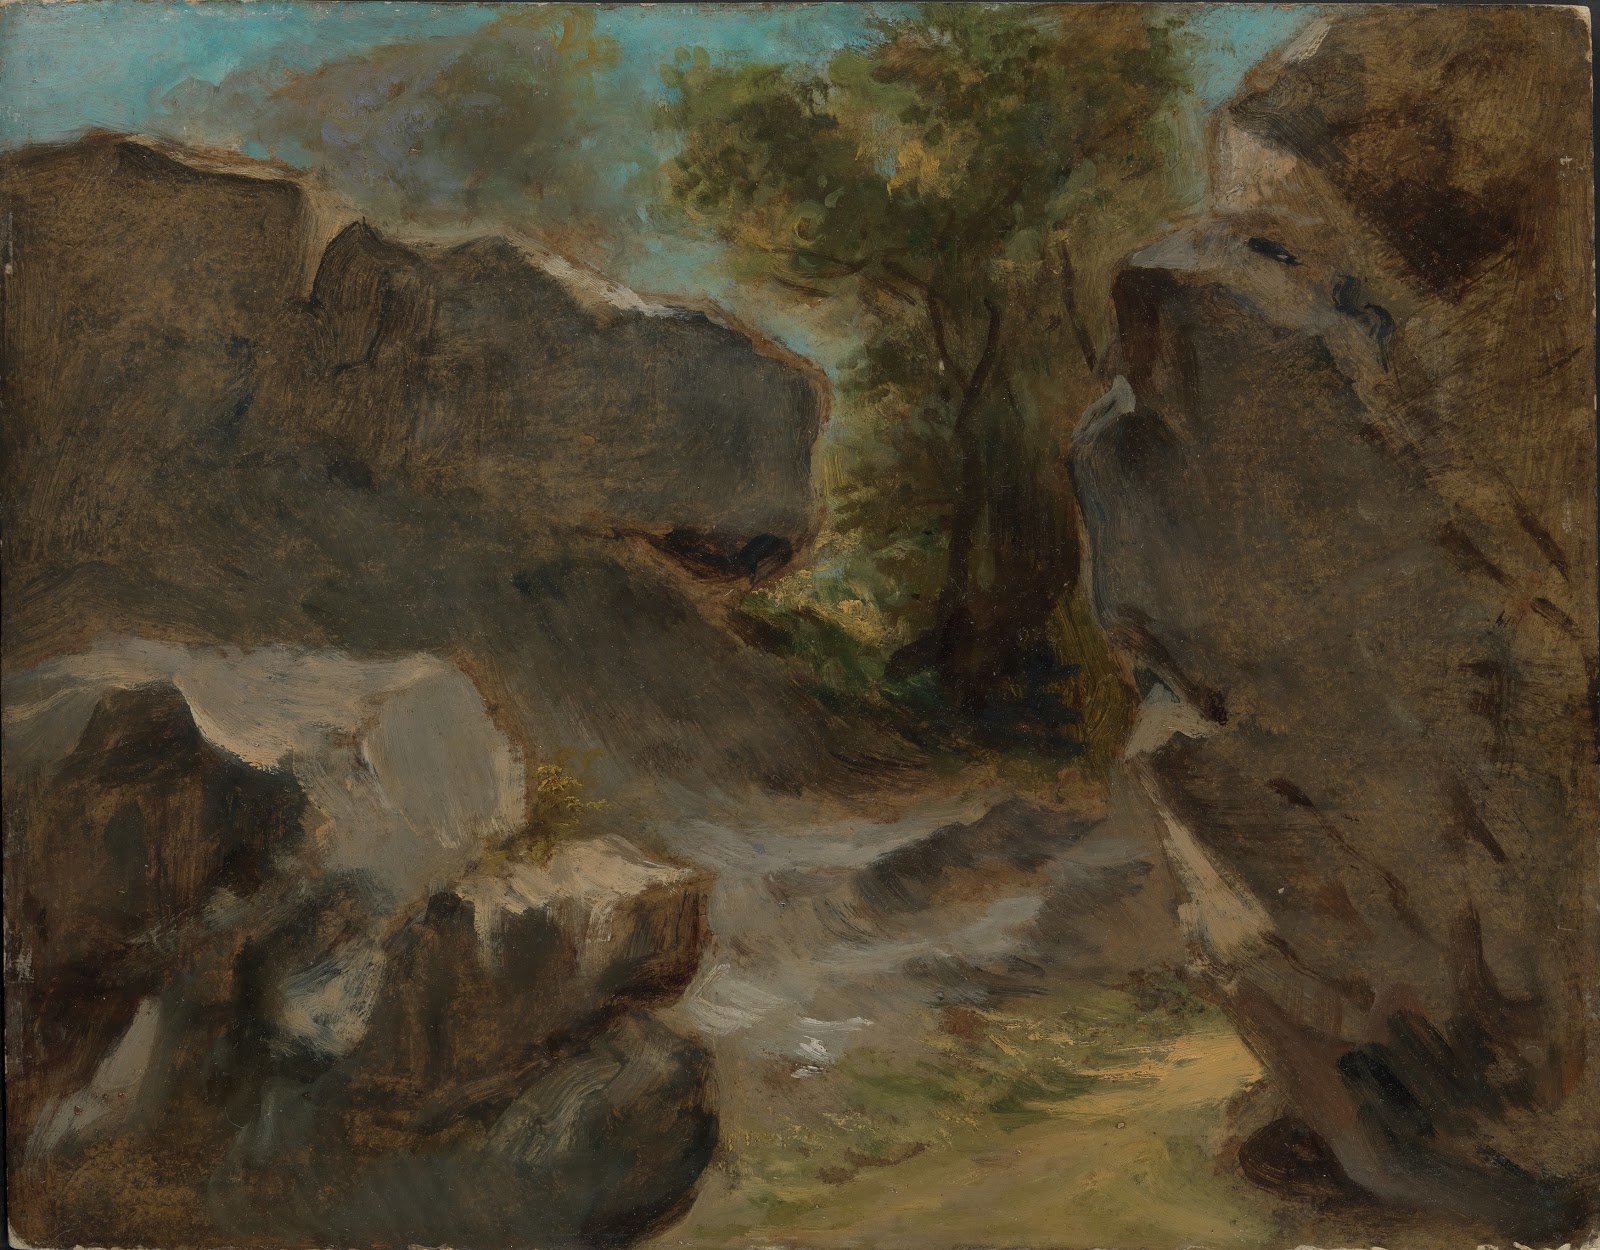 Eugene+Delacroix-1798-1863 (143).jpg